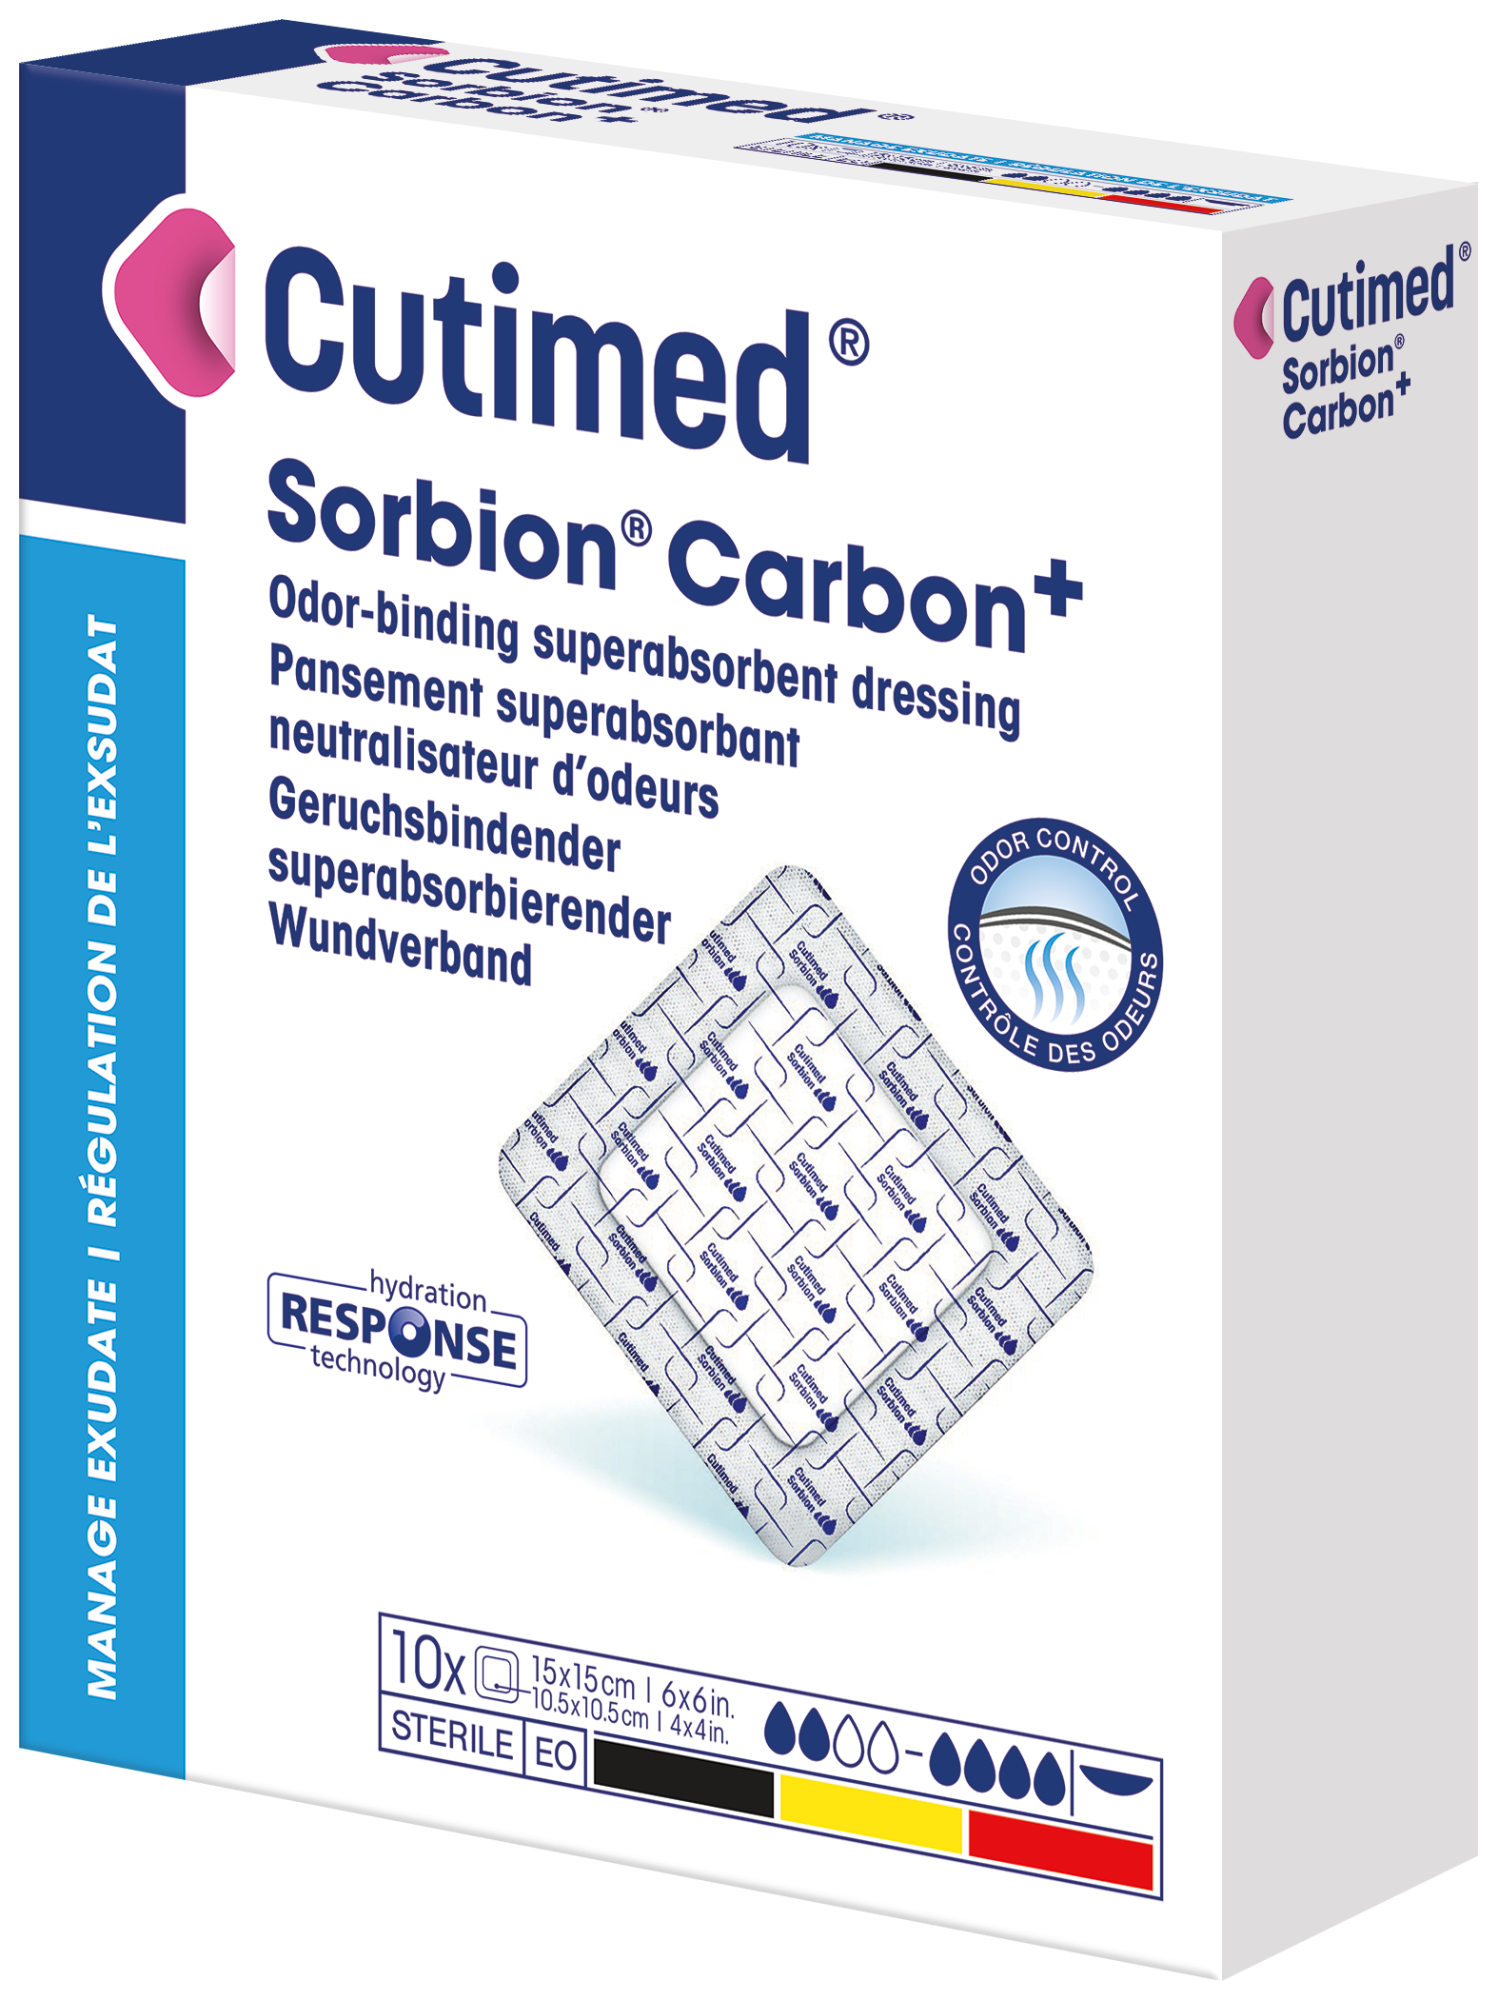 Cutimed® Sorbion® Carbon+